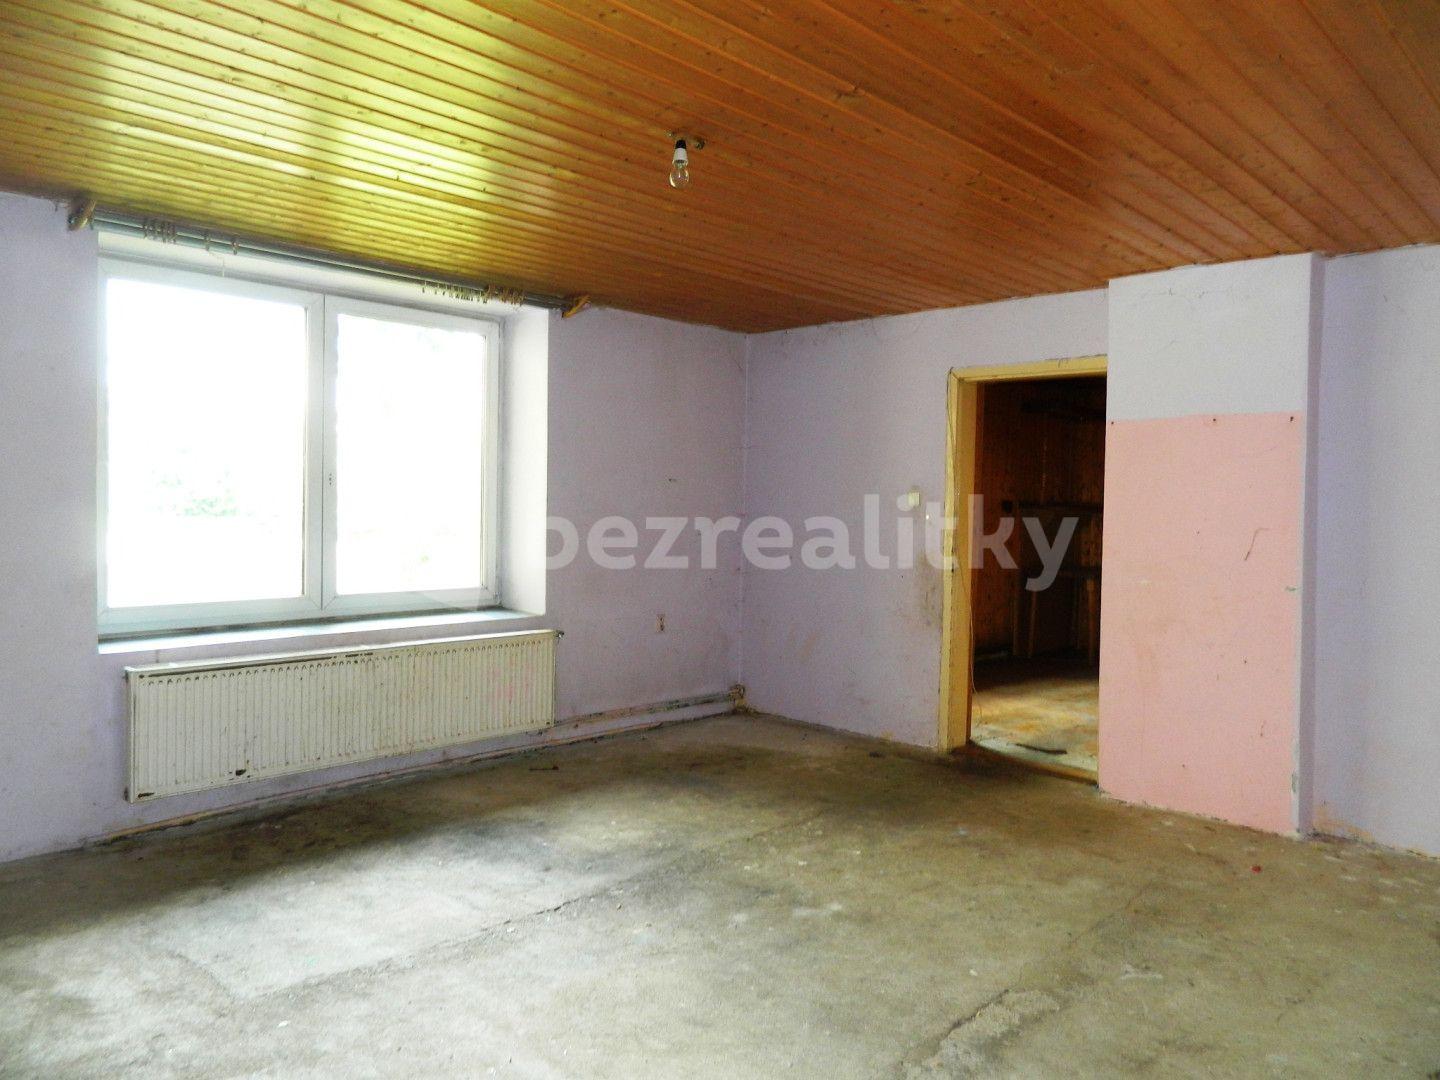 house for sale, 81 m², Hořepník, Vysočina Region